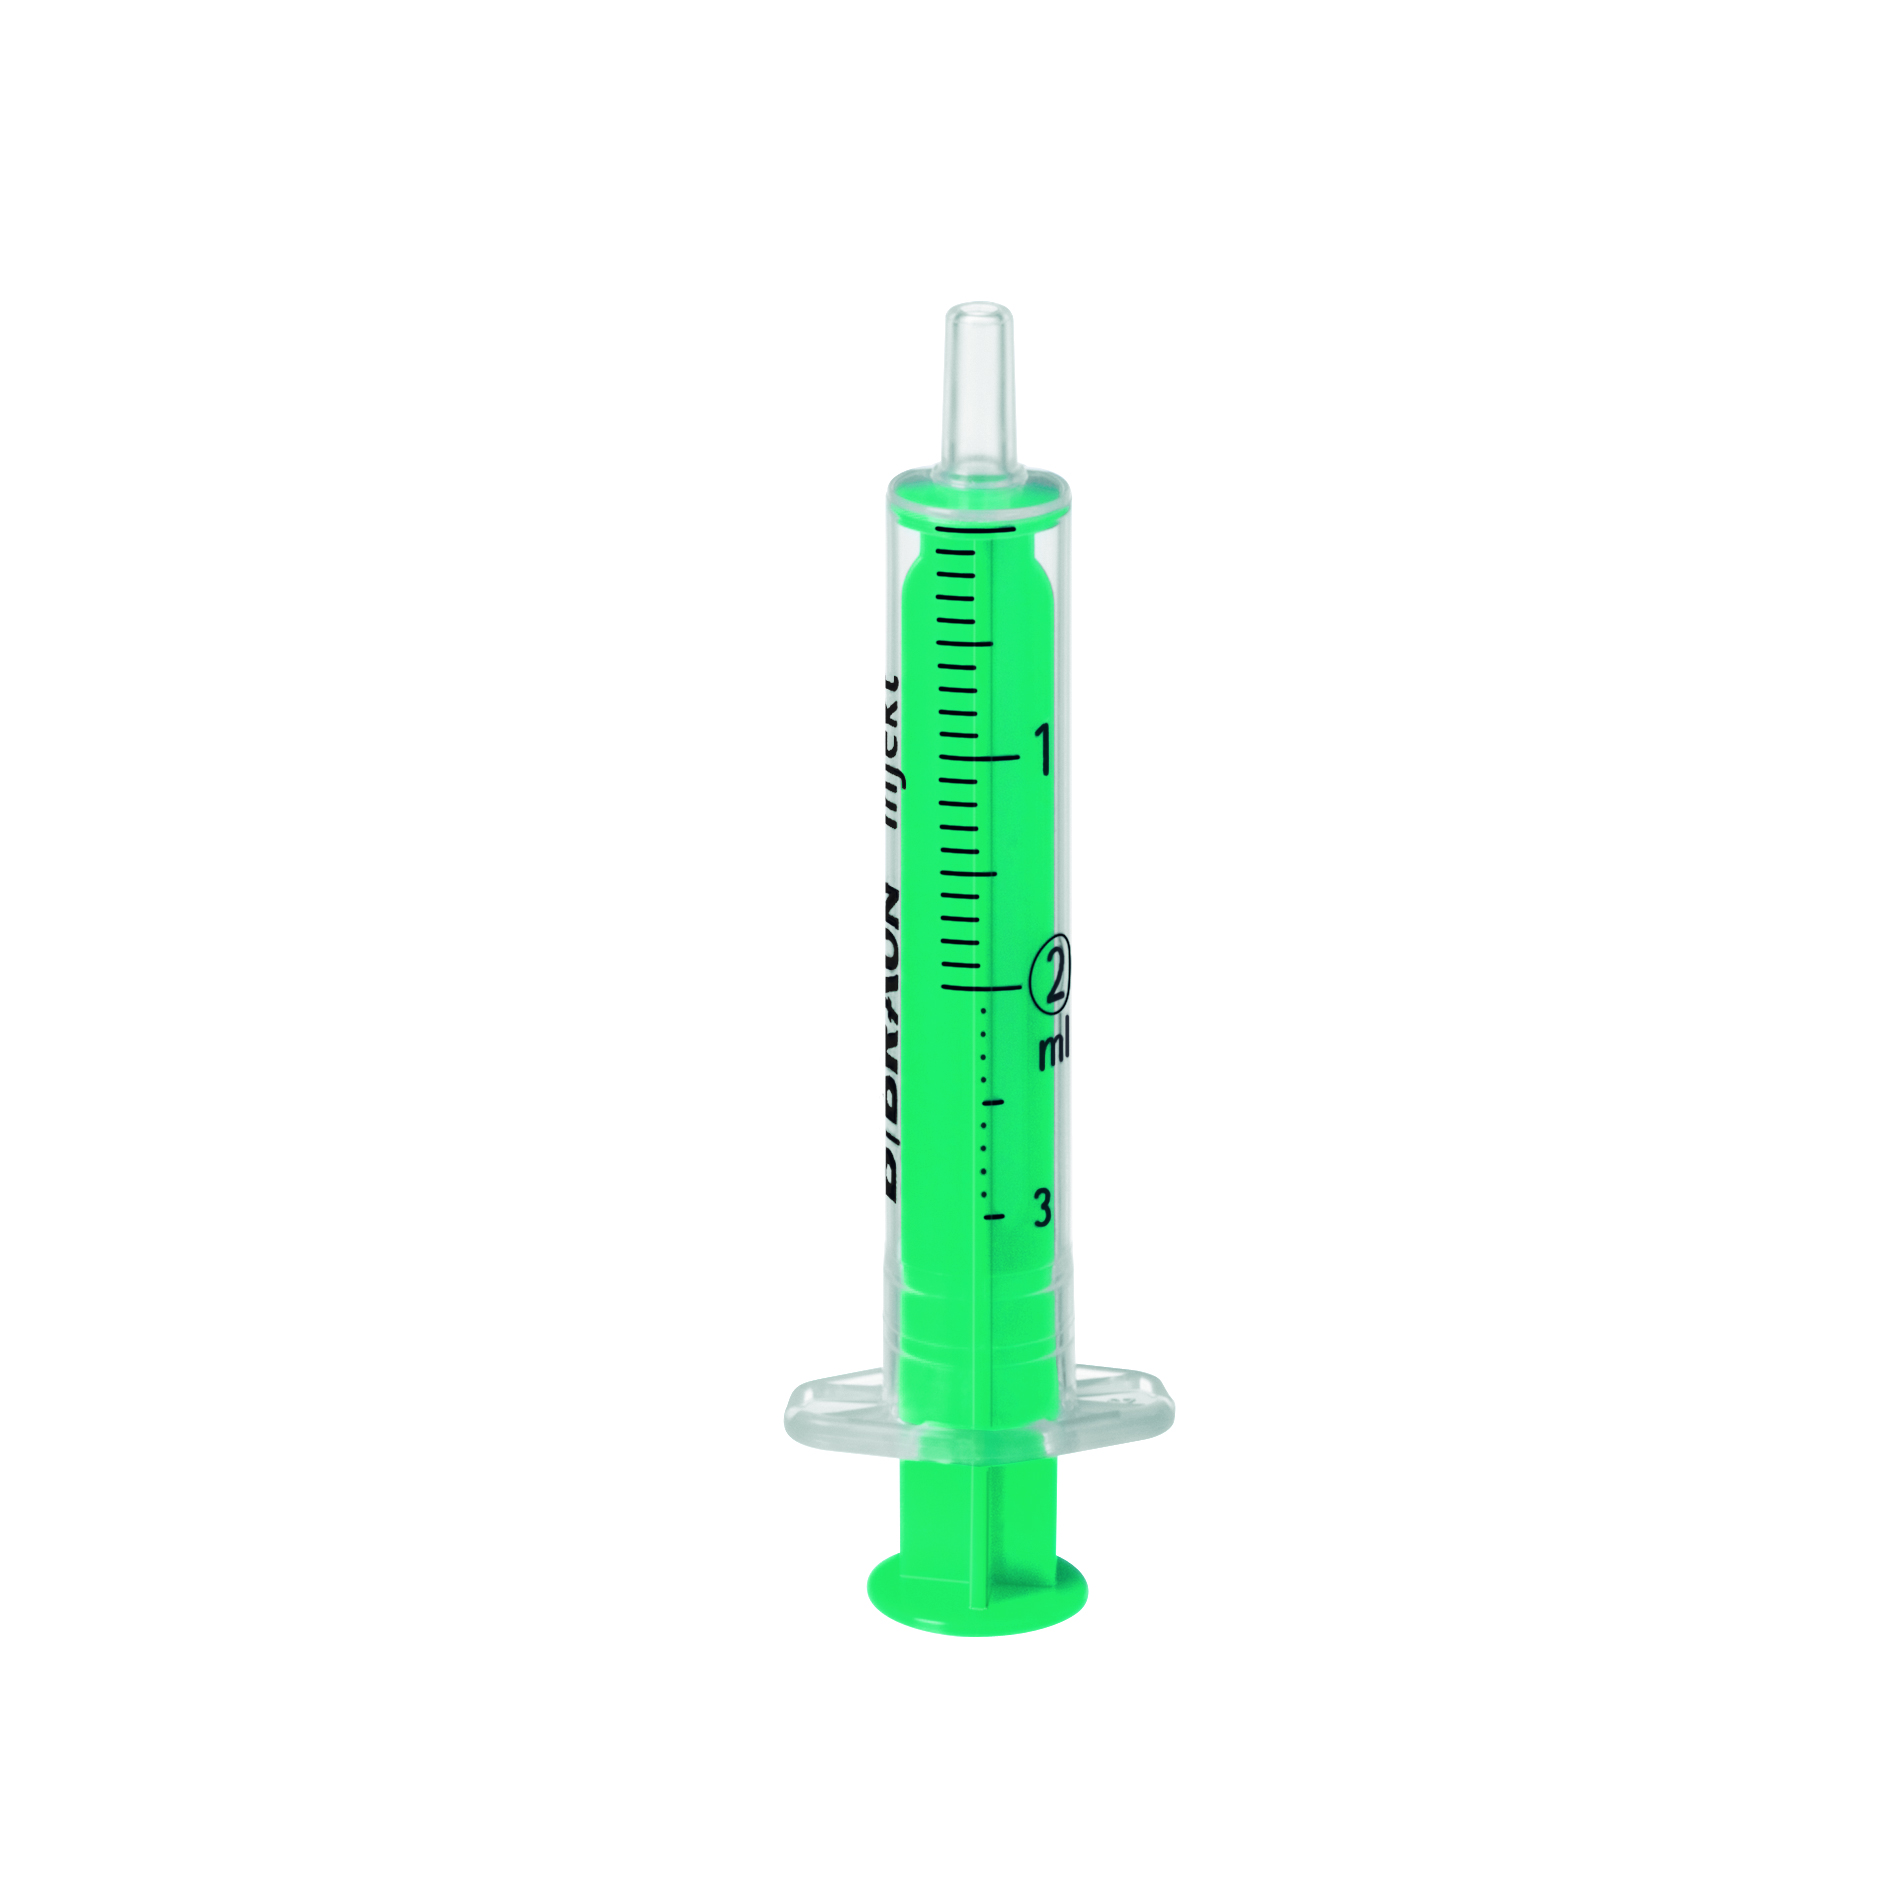 Injekt Spritze, PVC- und latexfrei, 2 ml, 100 Stück/Packung